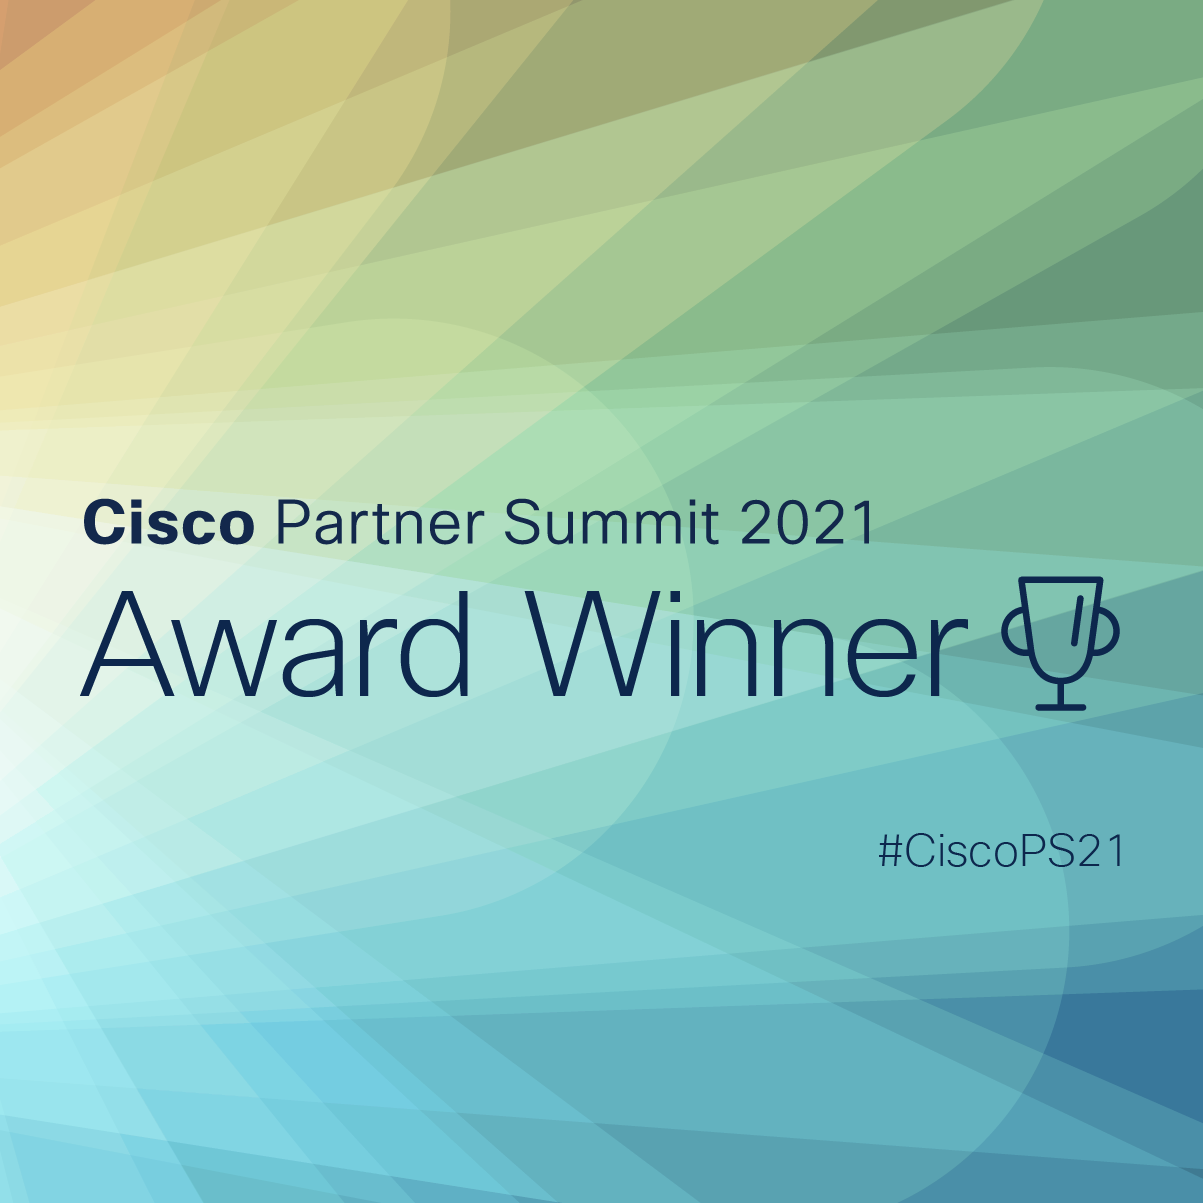 Cisco Partner Summit 2021 Award Winner